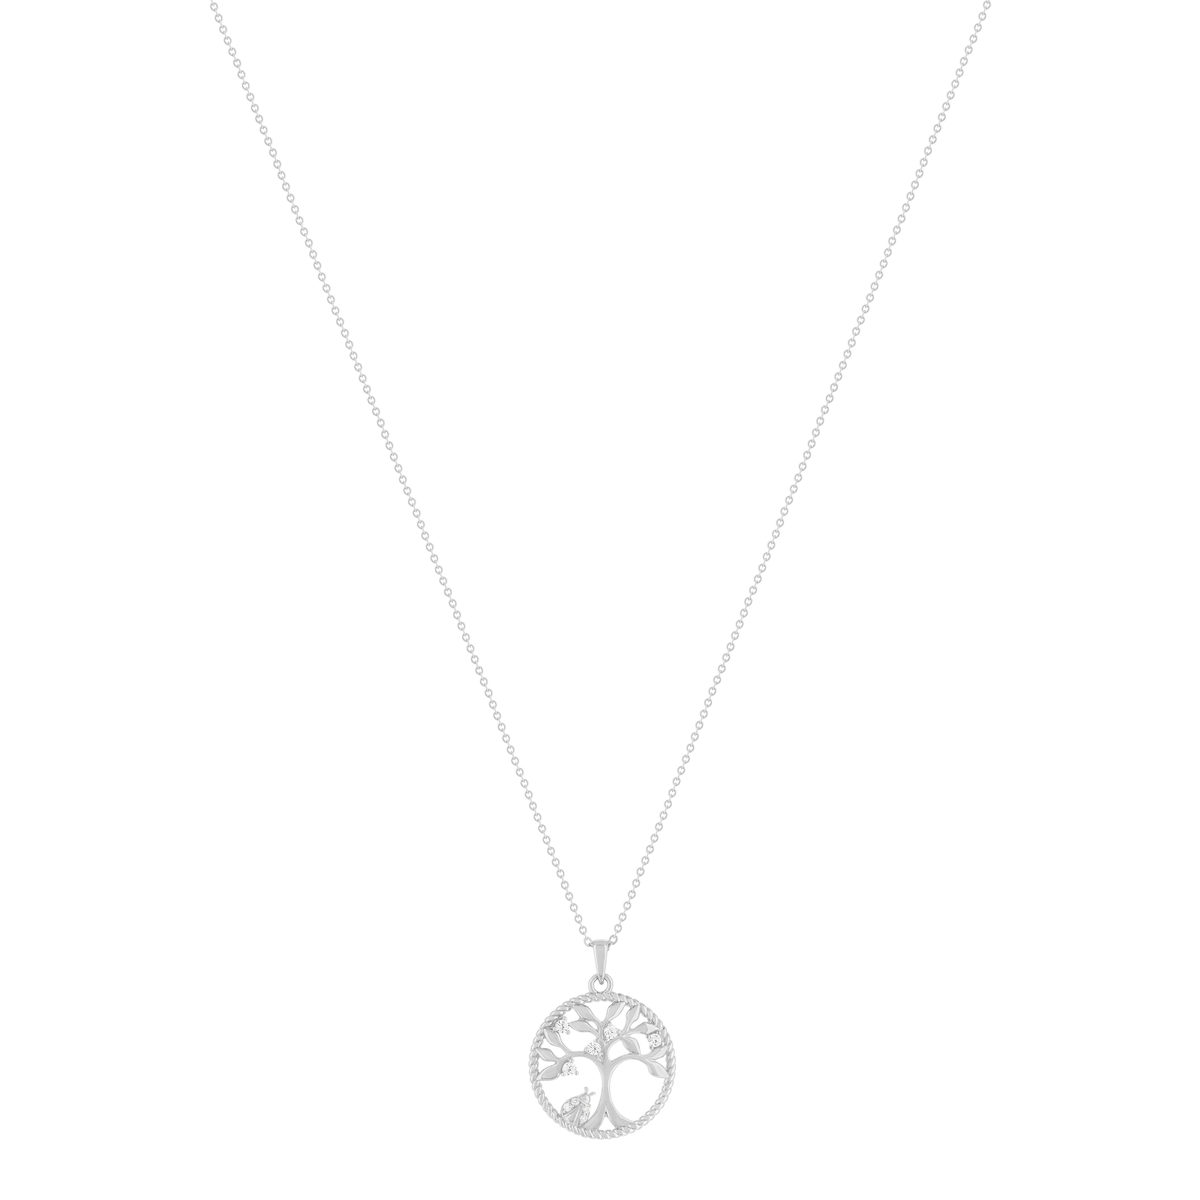 Collier argent 925 et zirconias motif arbre de vie 45cm - vue 2